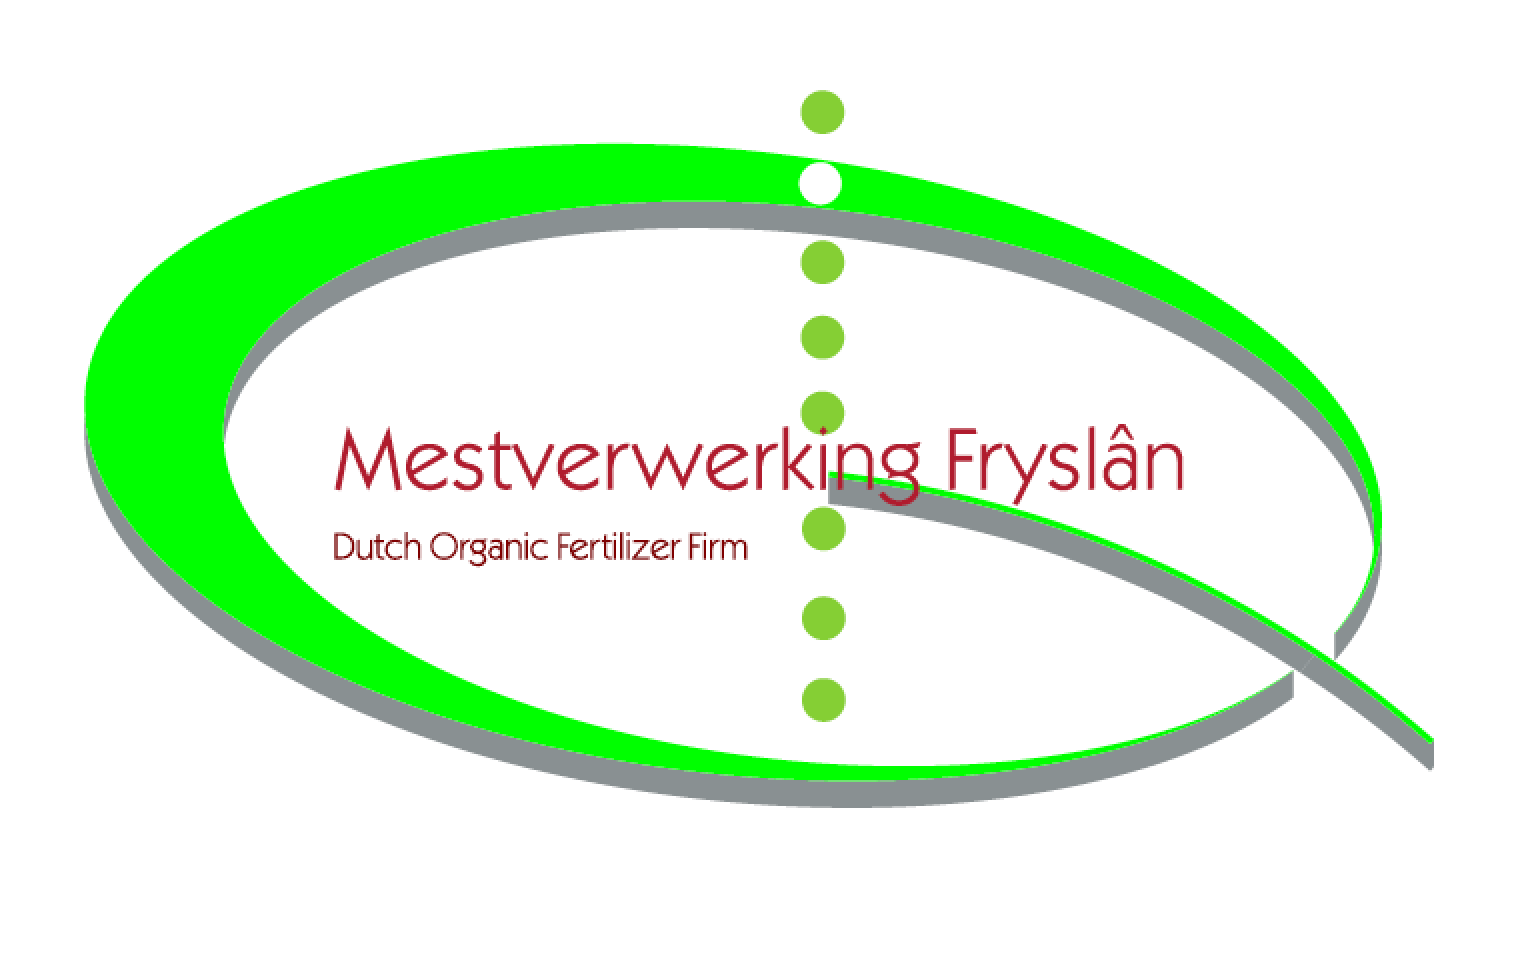 Mestverwerking Friesland